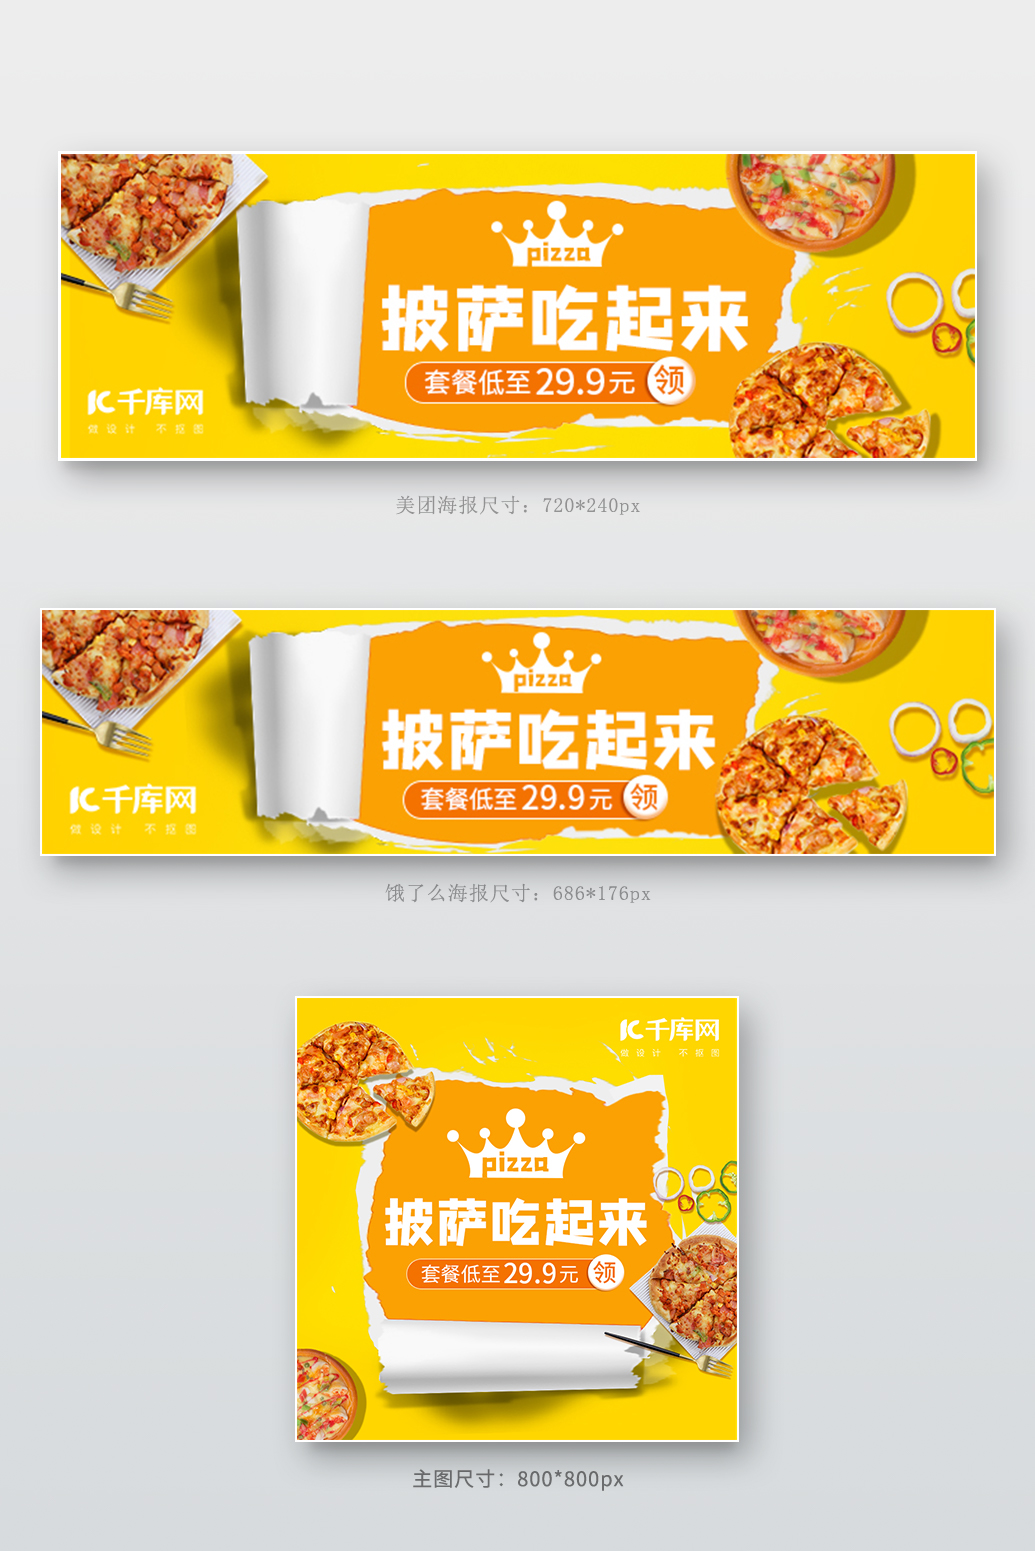 美团饿了么披萨外卖黄色简约电商外卖海报店招banner图片